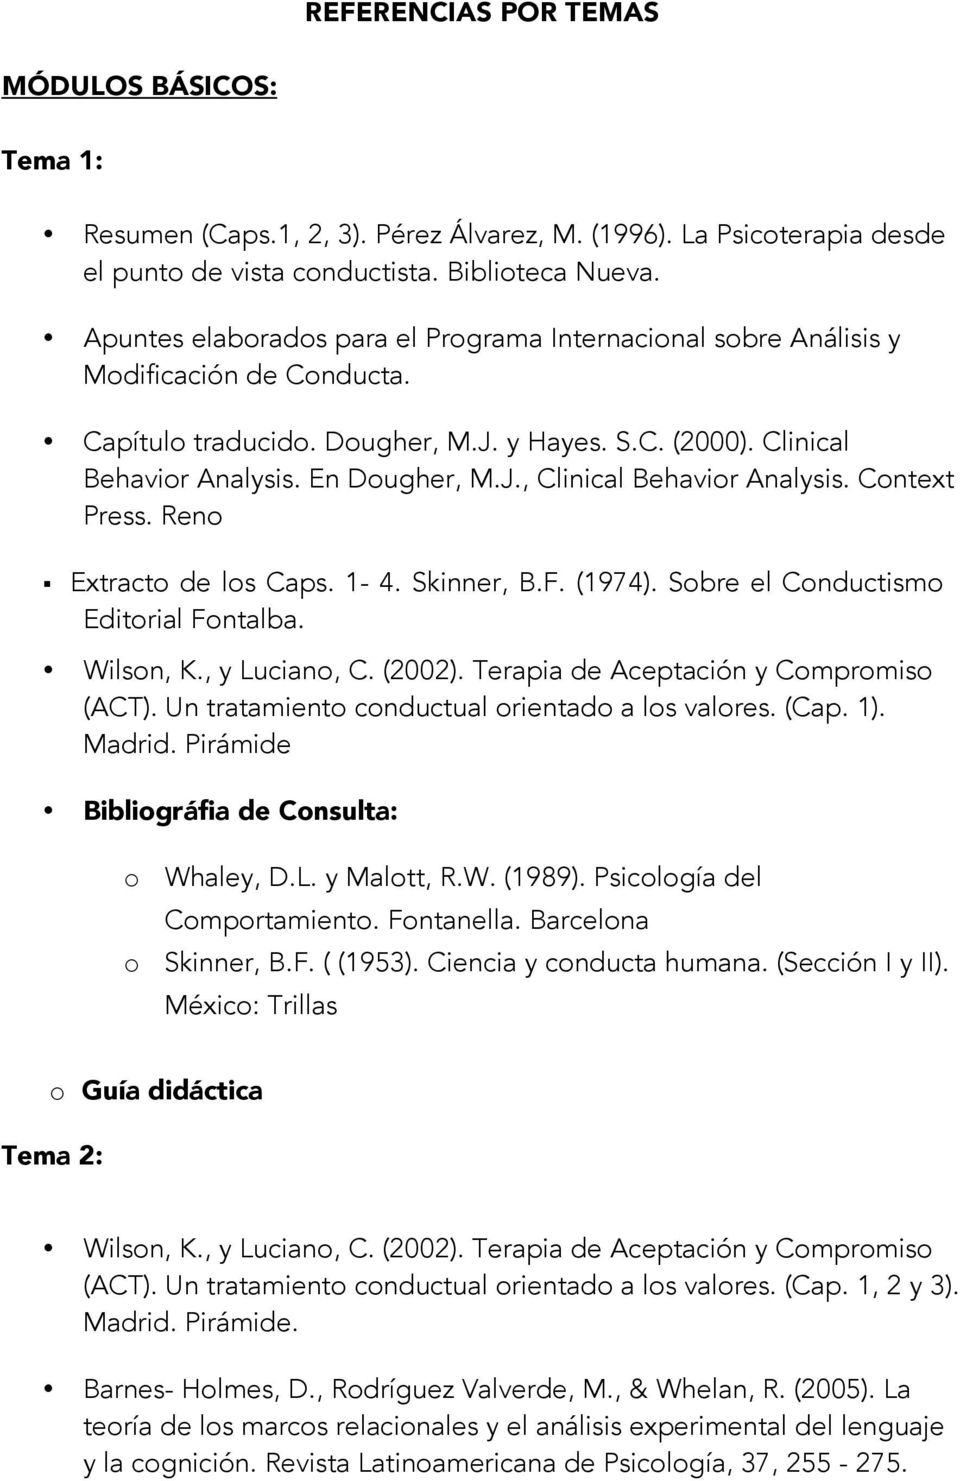 Context Press. Reno Extracto de los Caps. 1-4. Skinner, B.F. (1974). Sobre el Conductismo Editorial Fontalba. Wilson, K., y Luciano, C. (2002). Terapia de Aceptación y Compromiso (ACT).